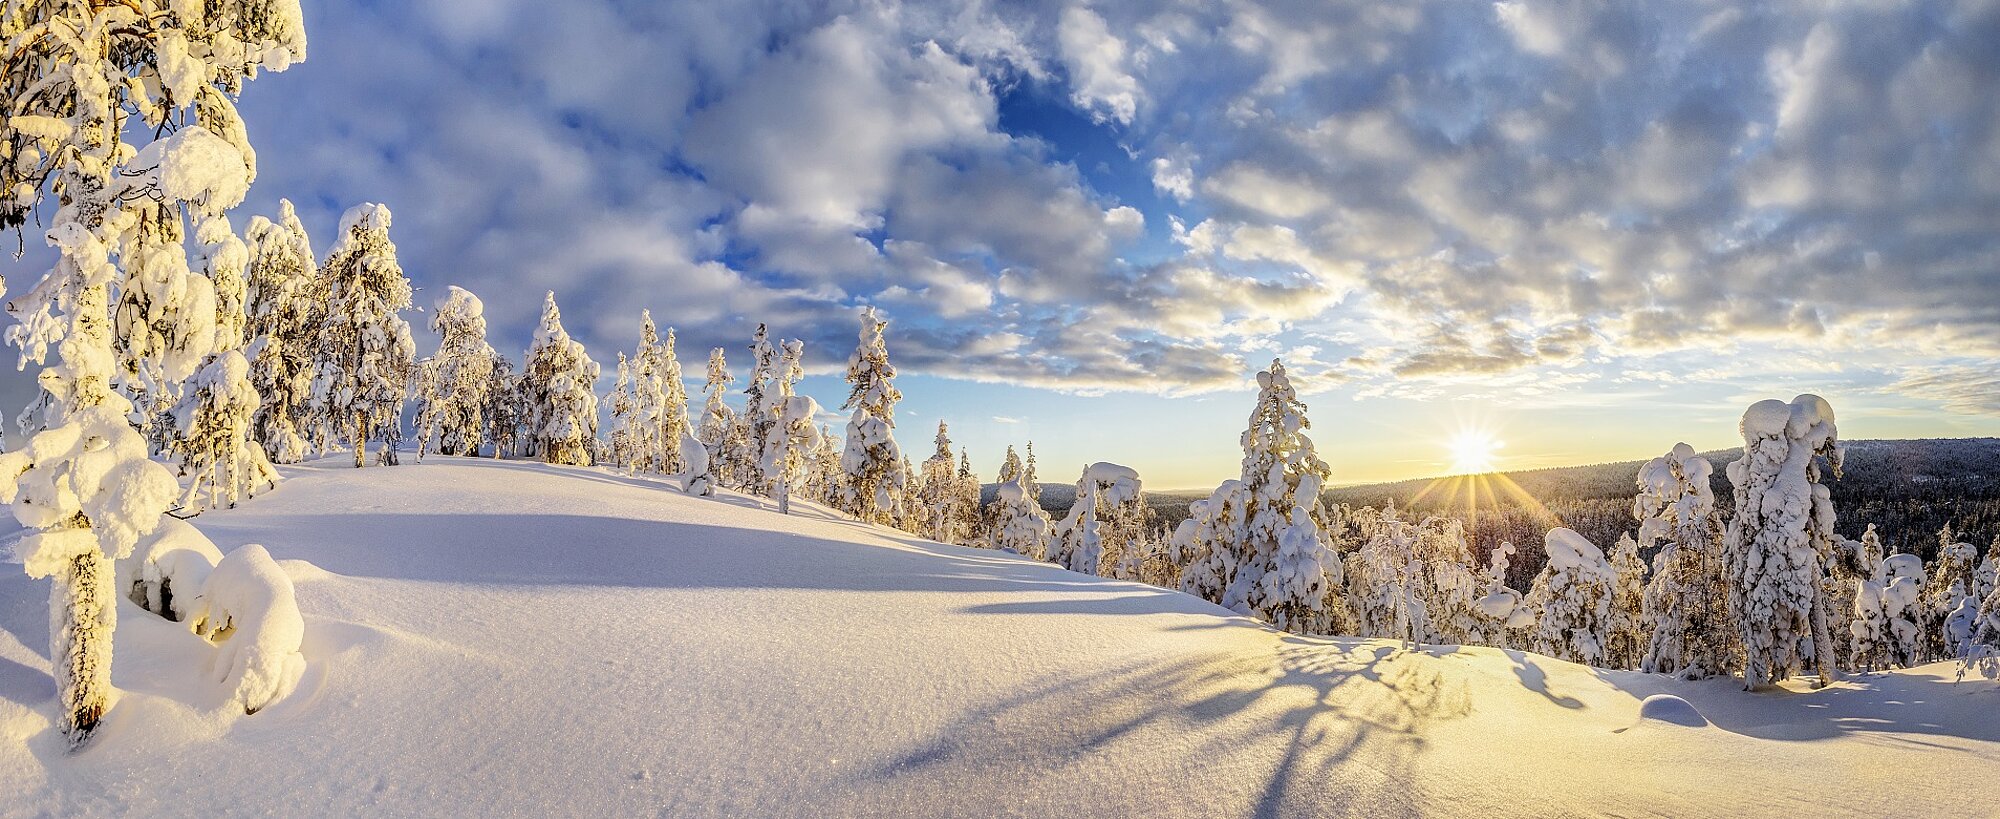 Winterurlaub in Lappland mit Wolters Rundreisen 